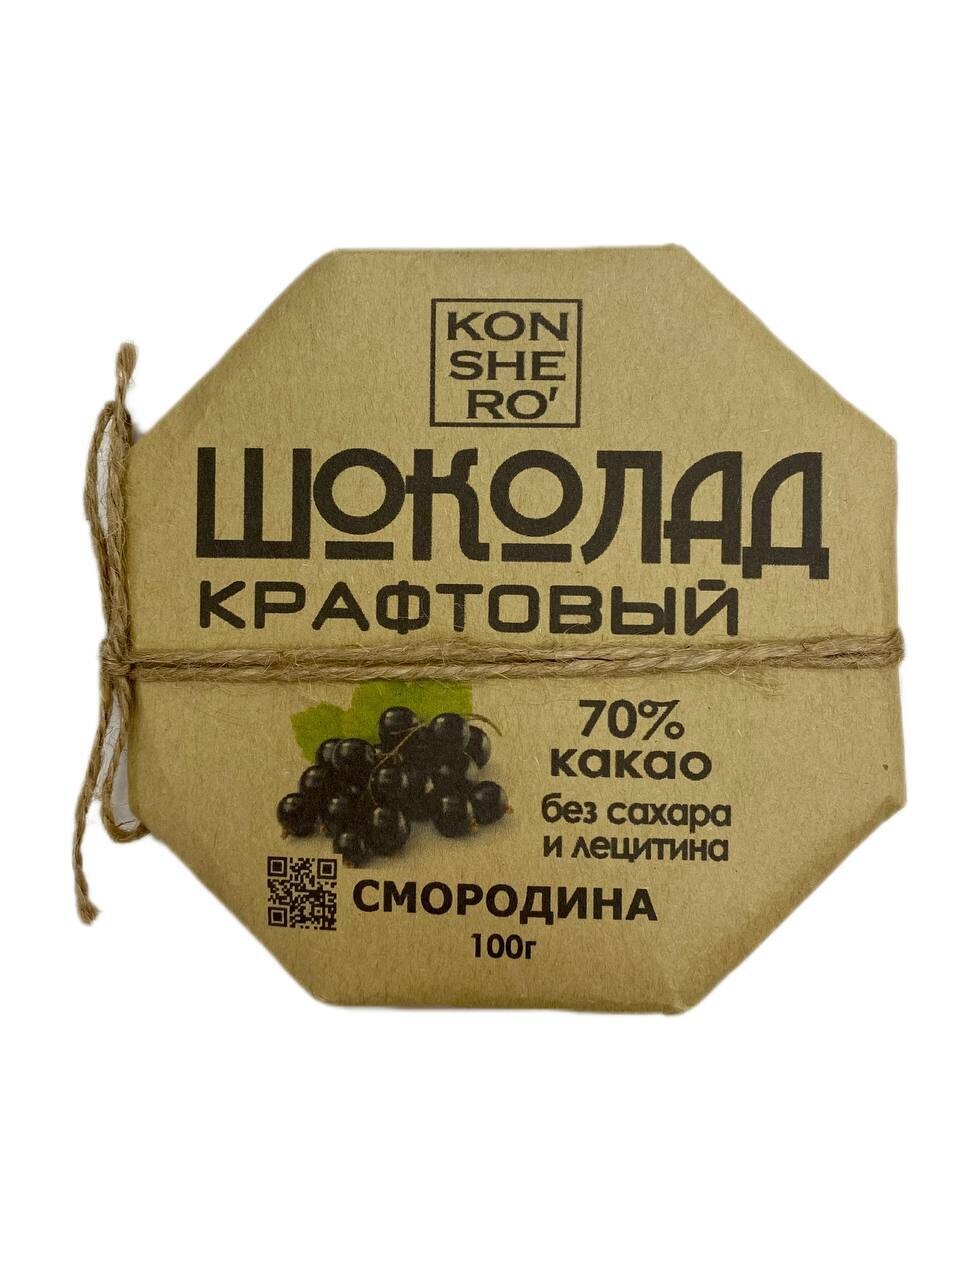 Шоколад на меду с чёрной смородиной, KONSHERO, 100 г